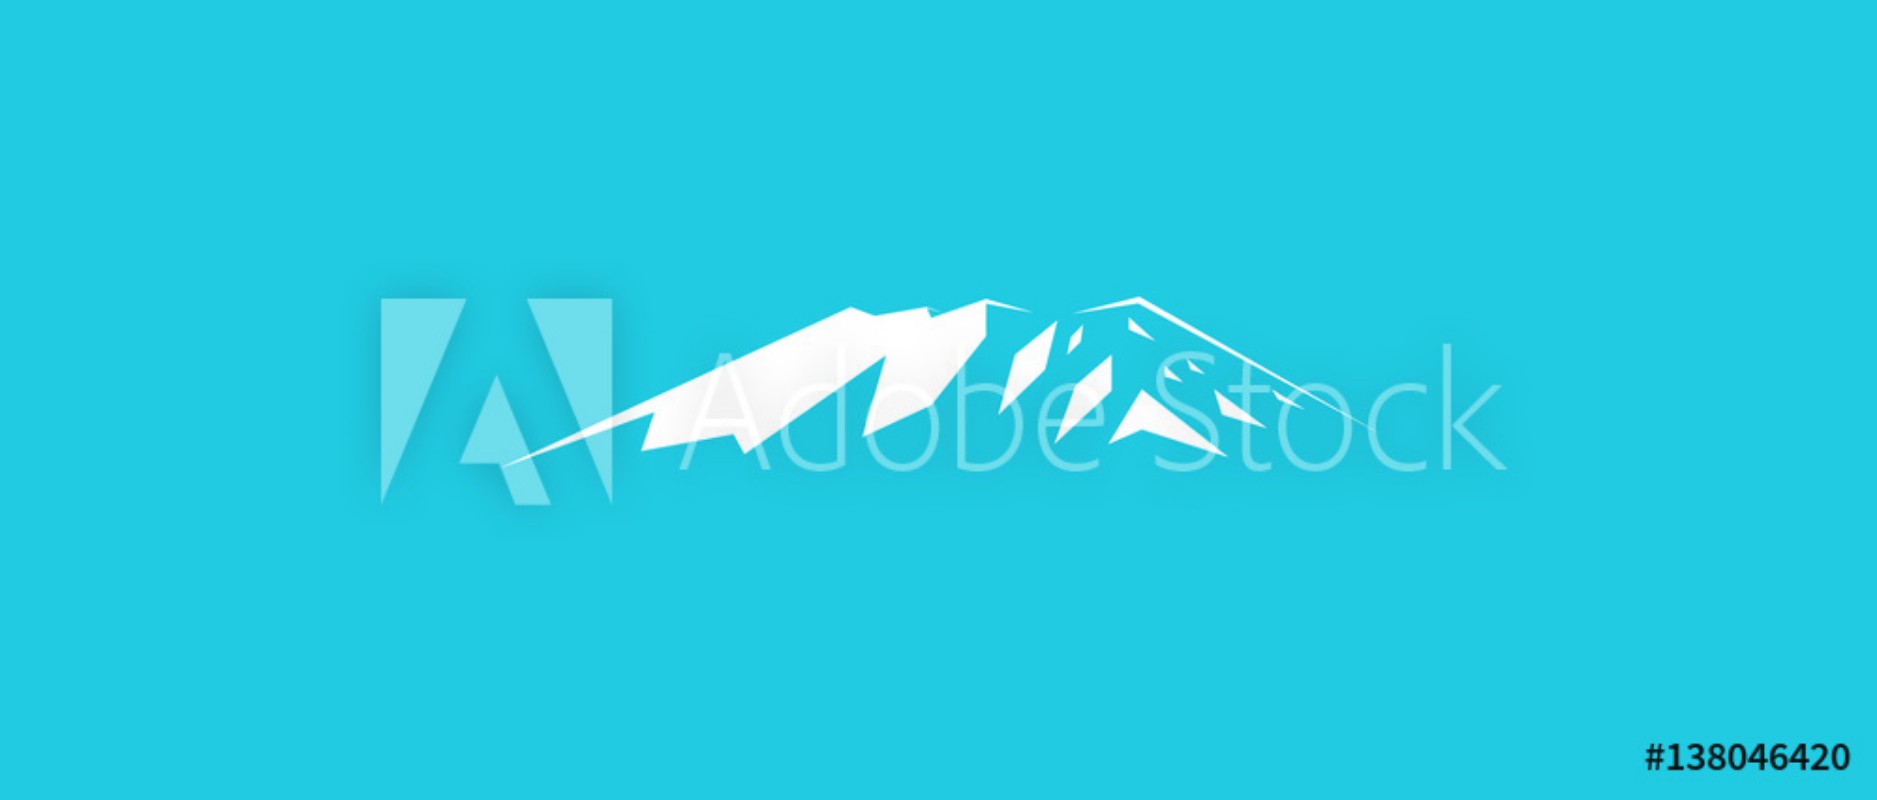 Image de Snow mountains peak Kilimanjaro logo  Blue background